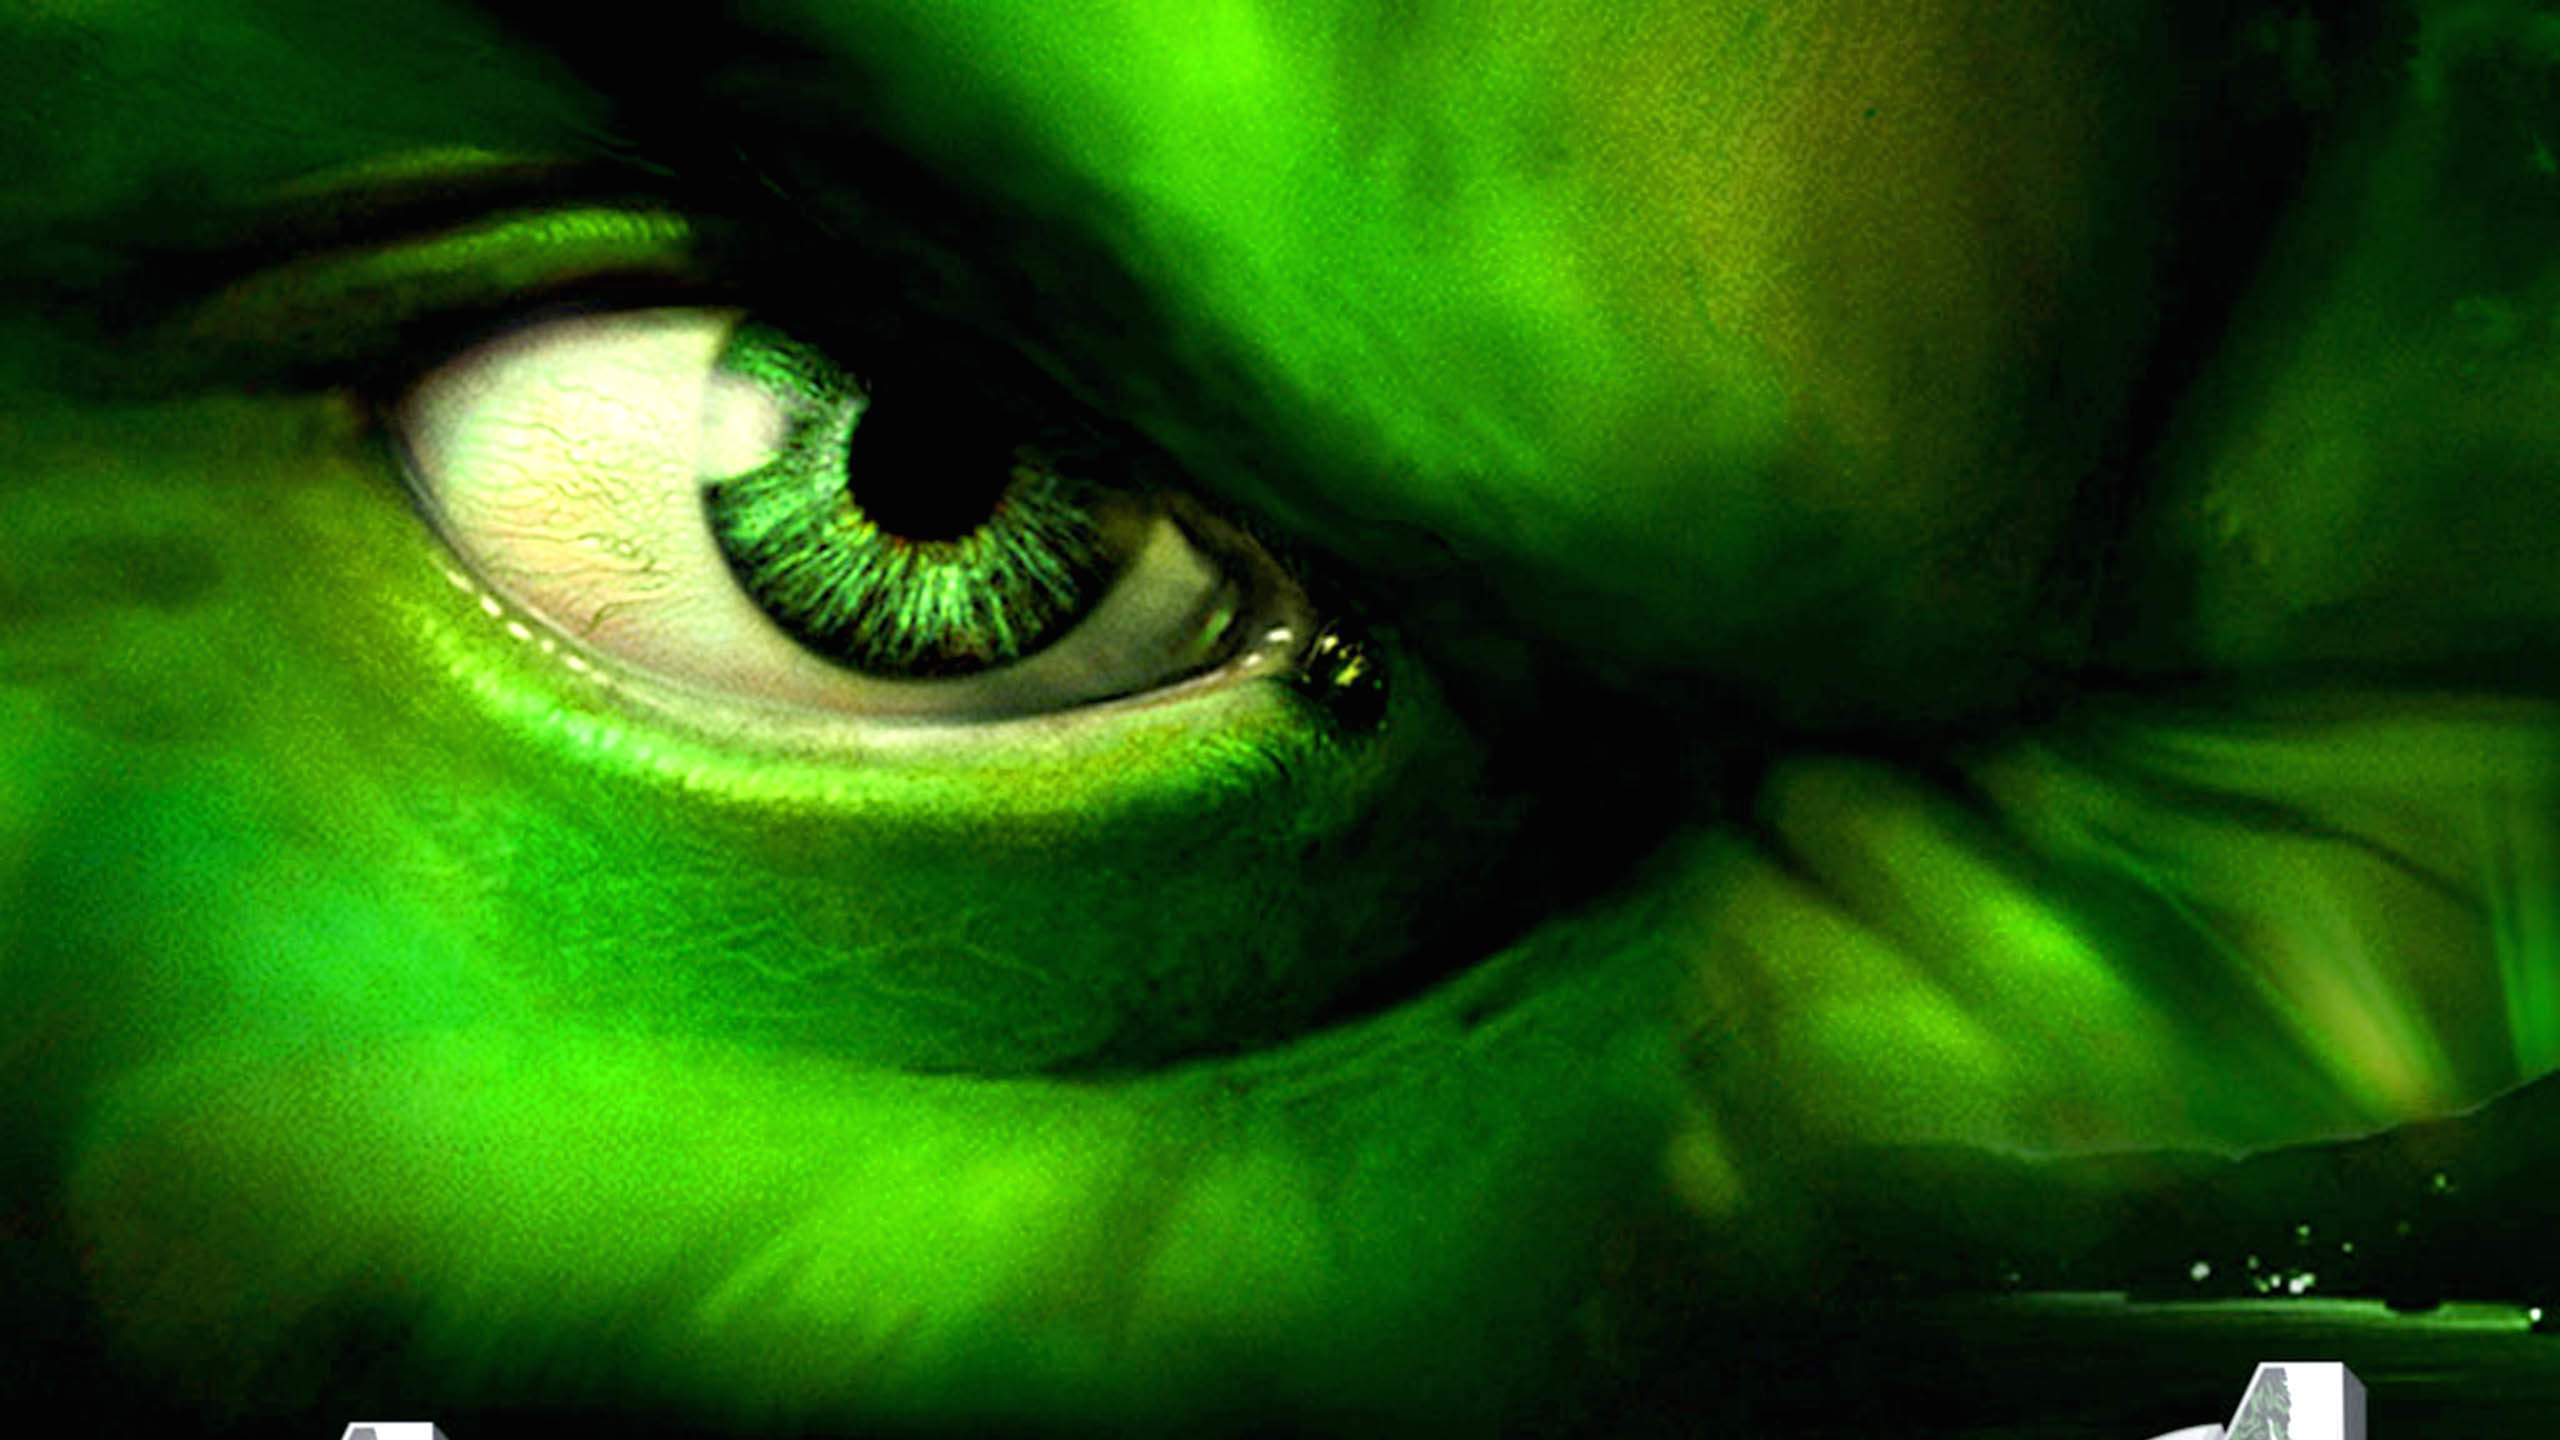 hulk live wallpaper,grün,auge,nahansicht,iris,makrofotografie